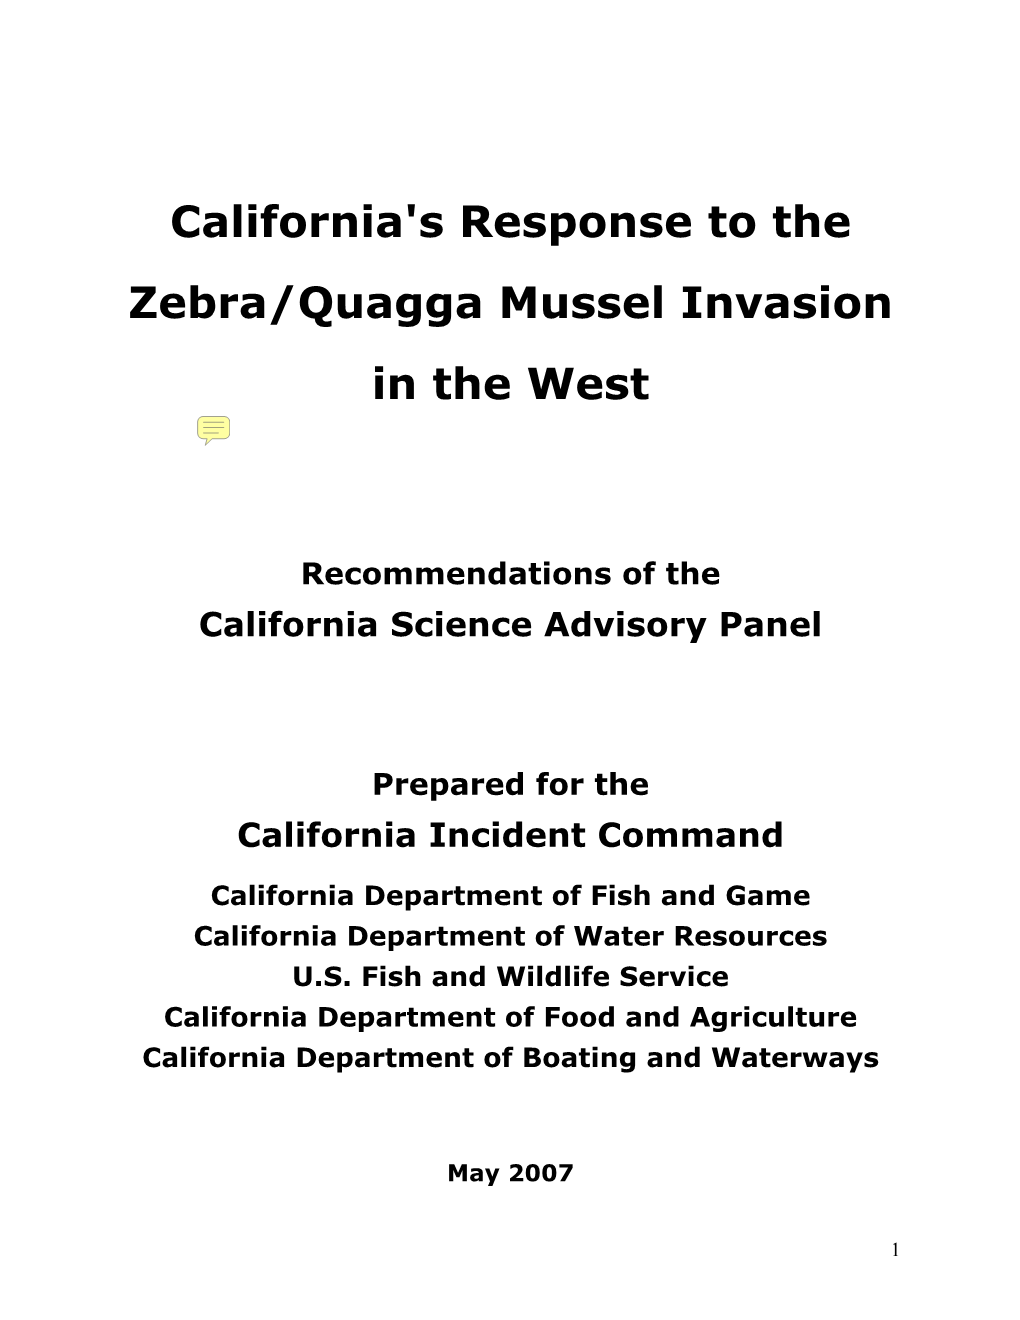 California's Response to the Zebra/Quagga Mussel Invasion In